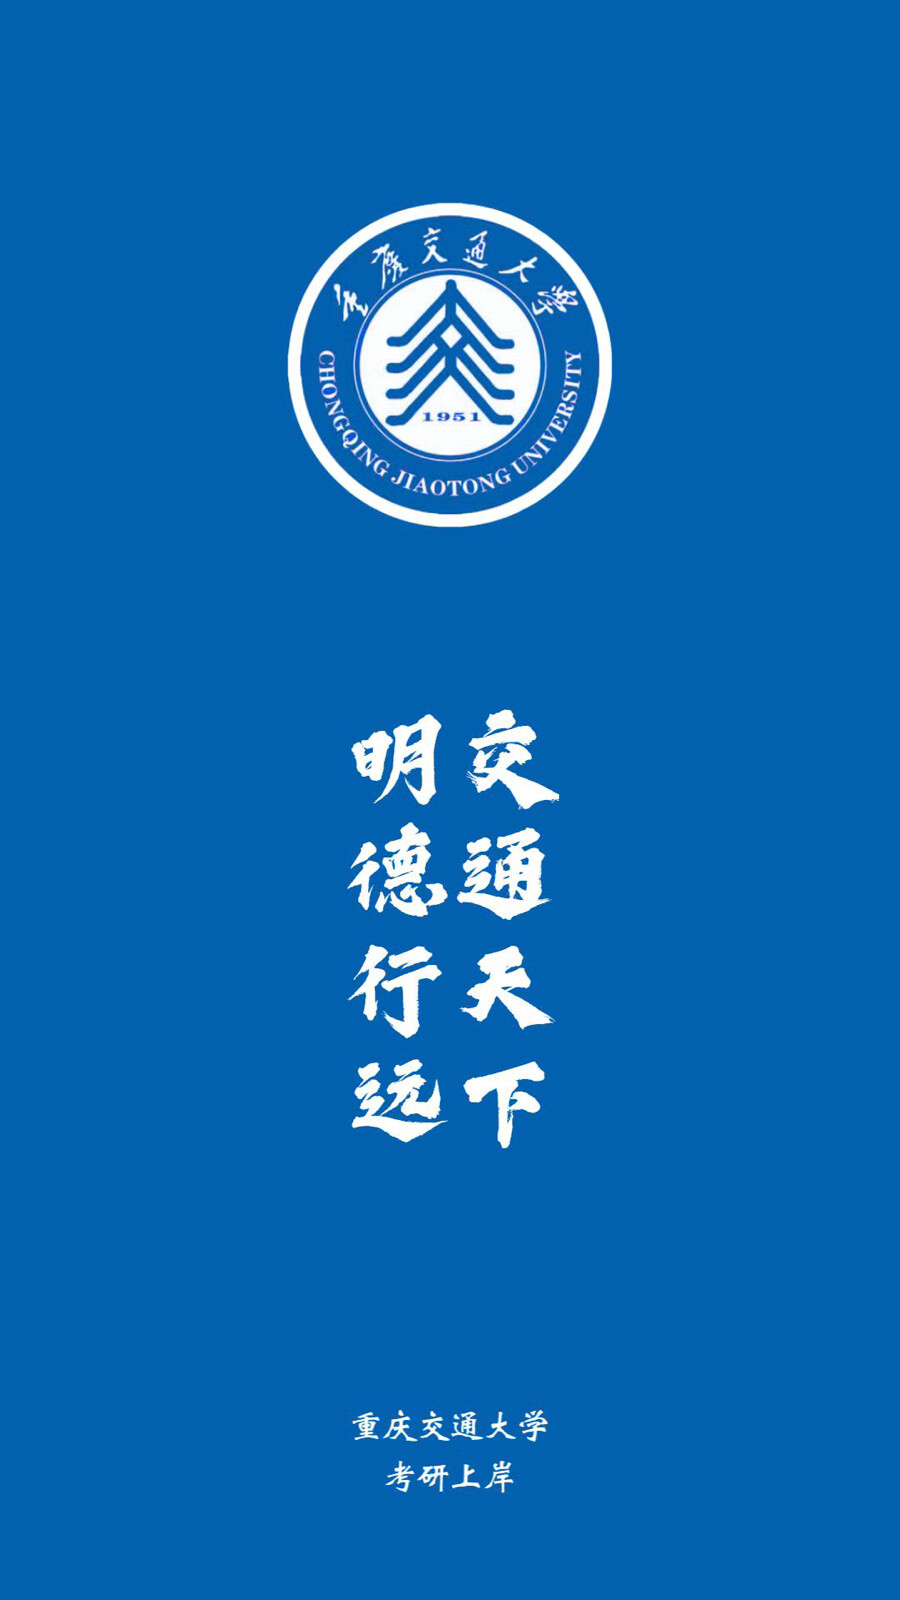 重庆交通大学logo高清图片